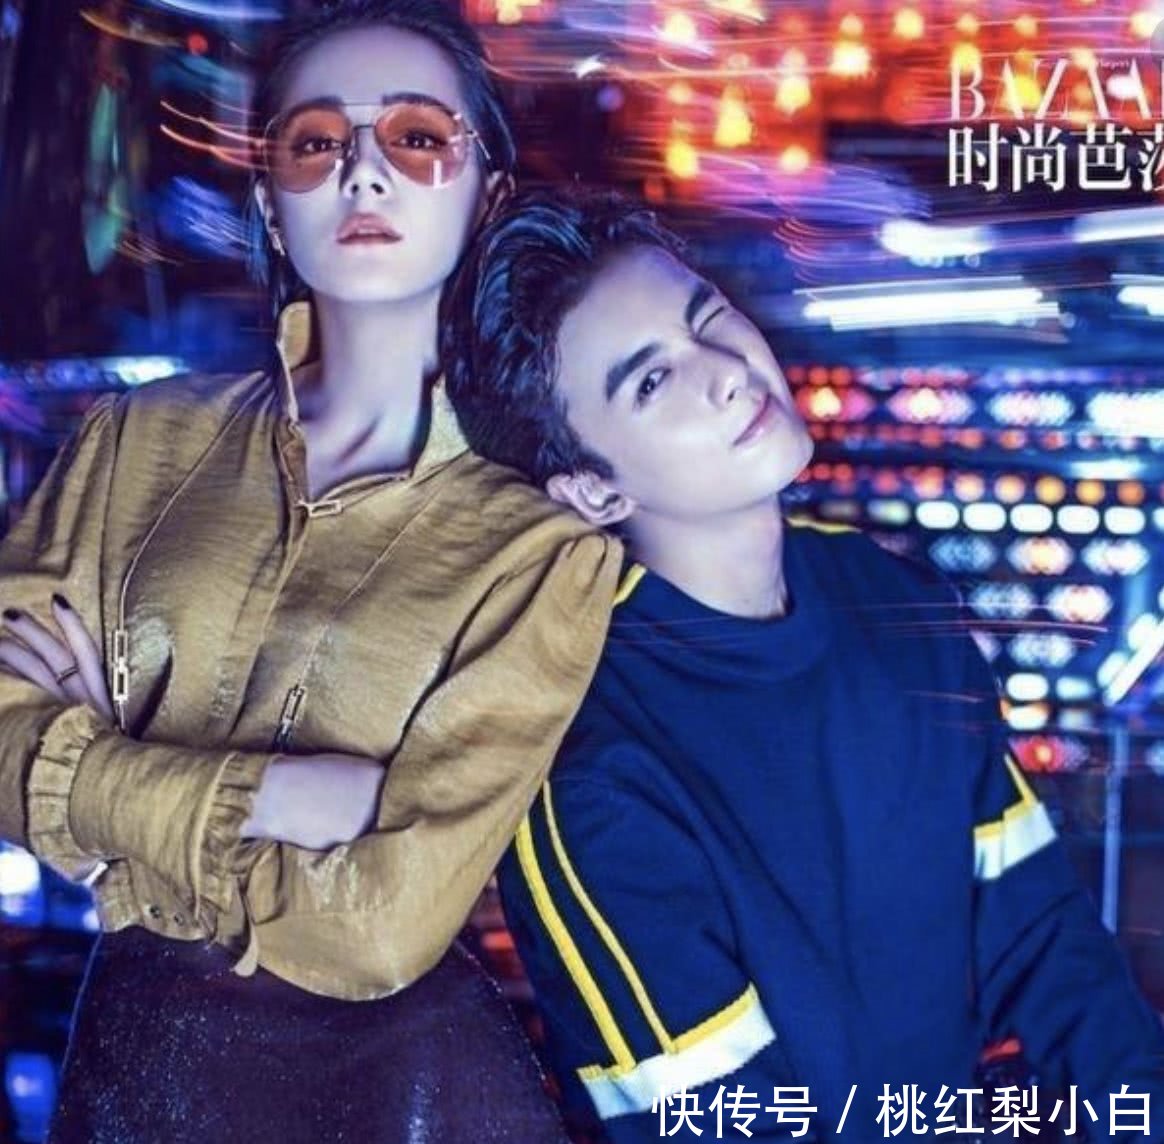 吴磊与迪丽热巴合作登上《时尚芭莎》酷炫造型